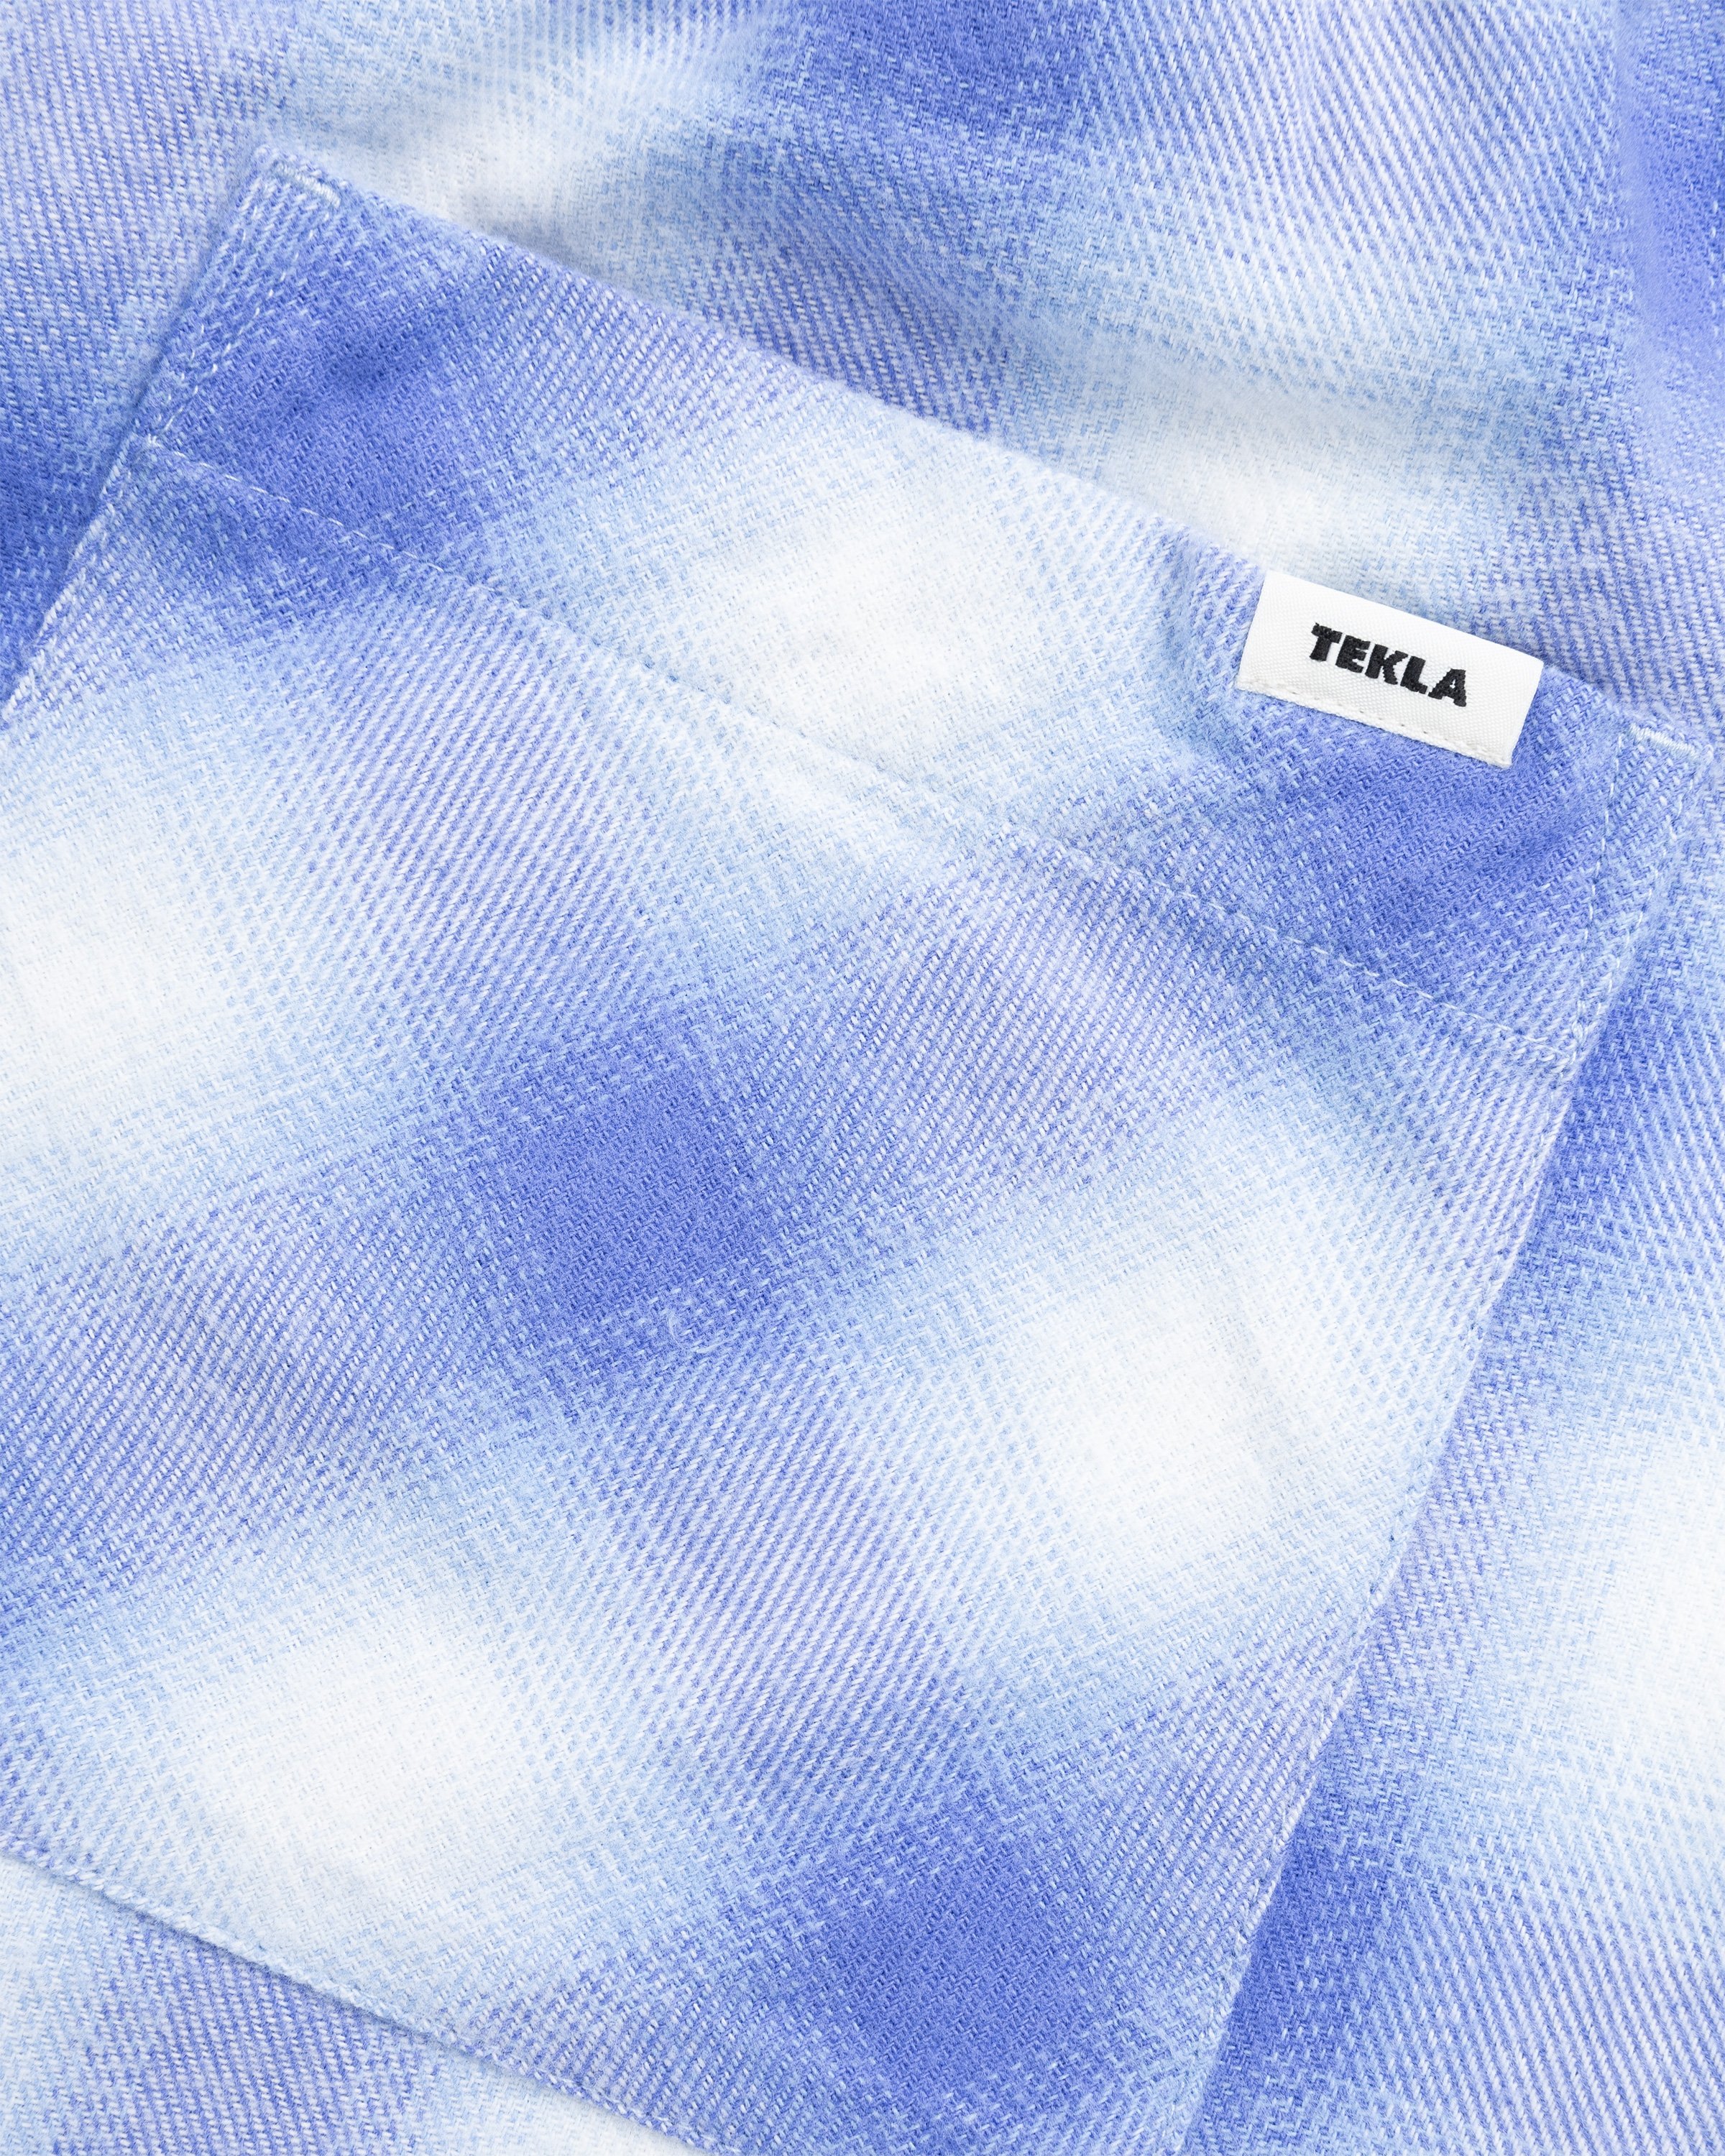 Tekla - Flannel Pyjamas Pants Light Blue Plaid - Clothing - Blue - Image 6